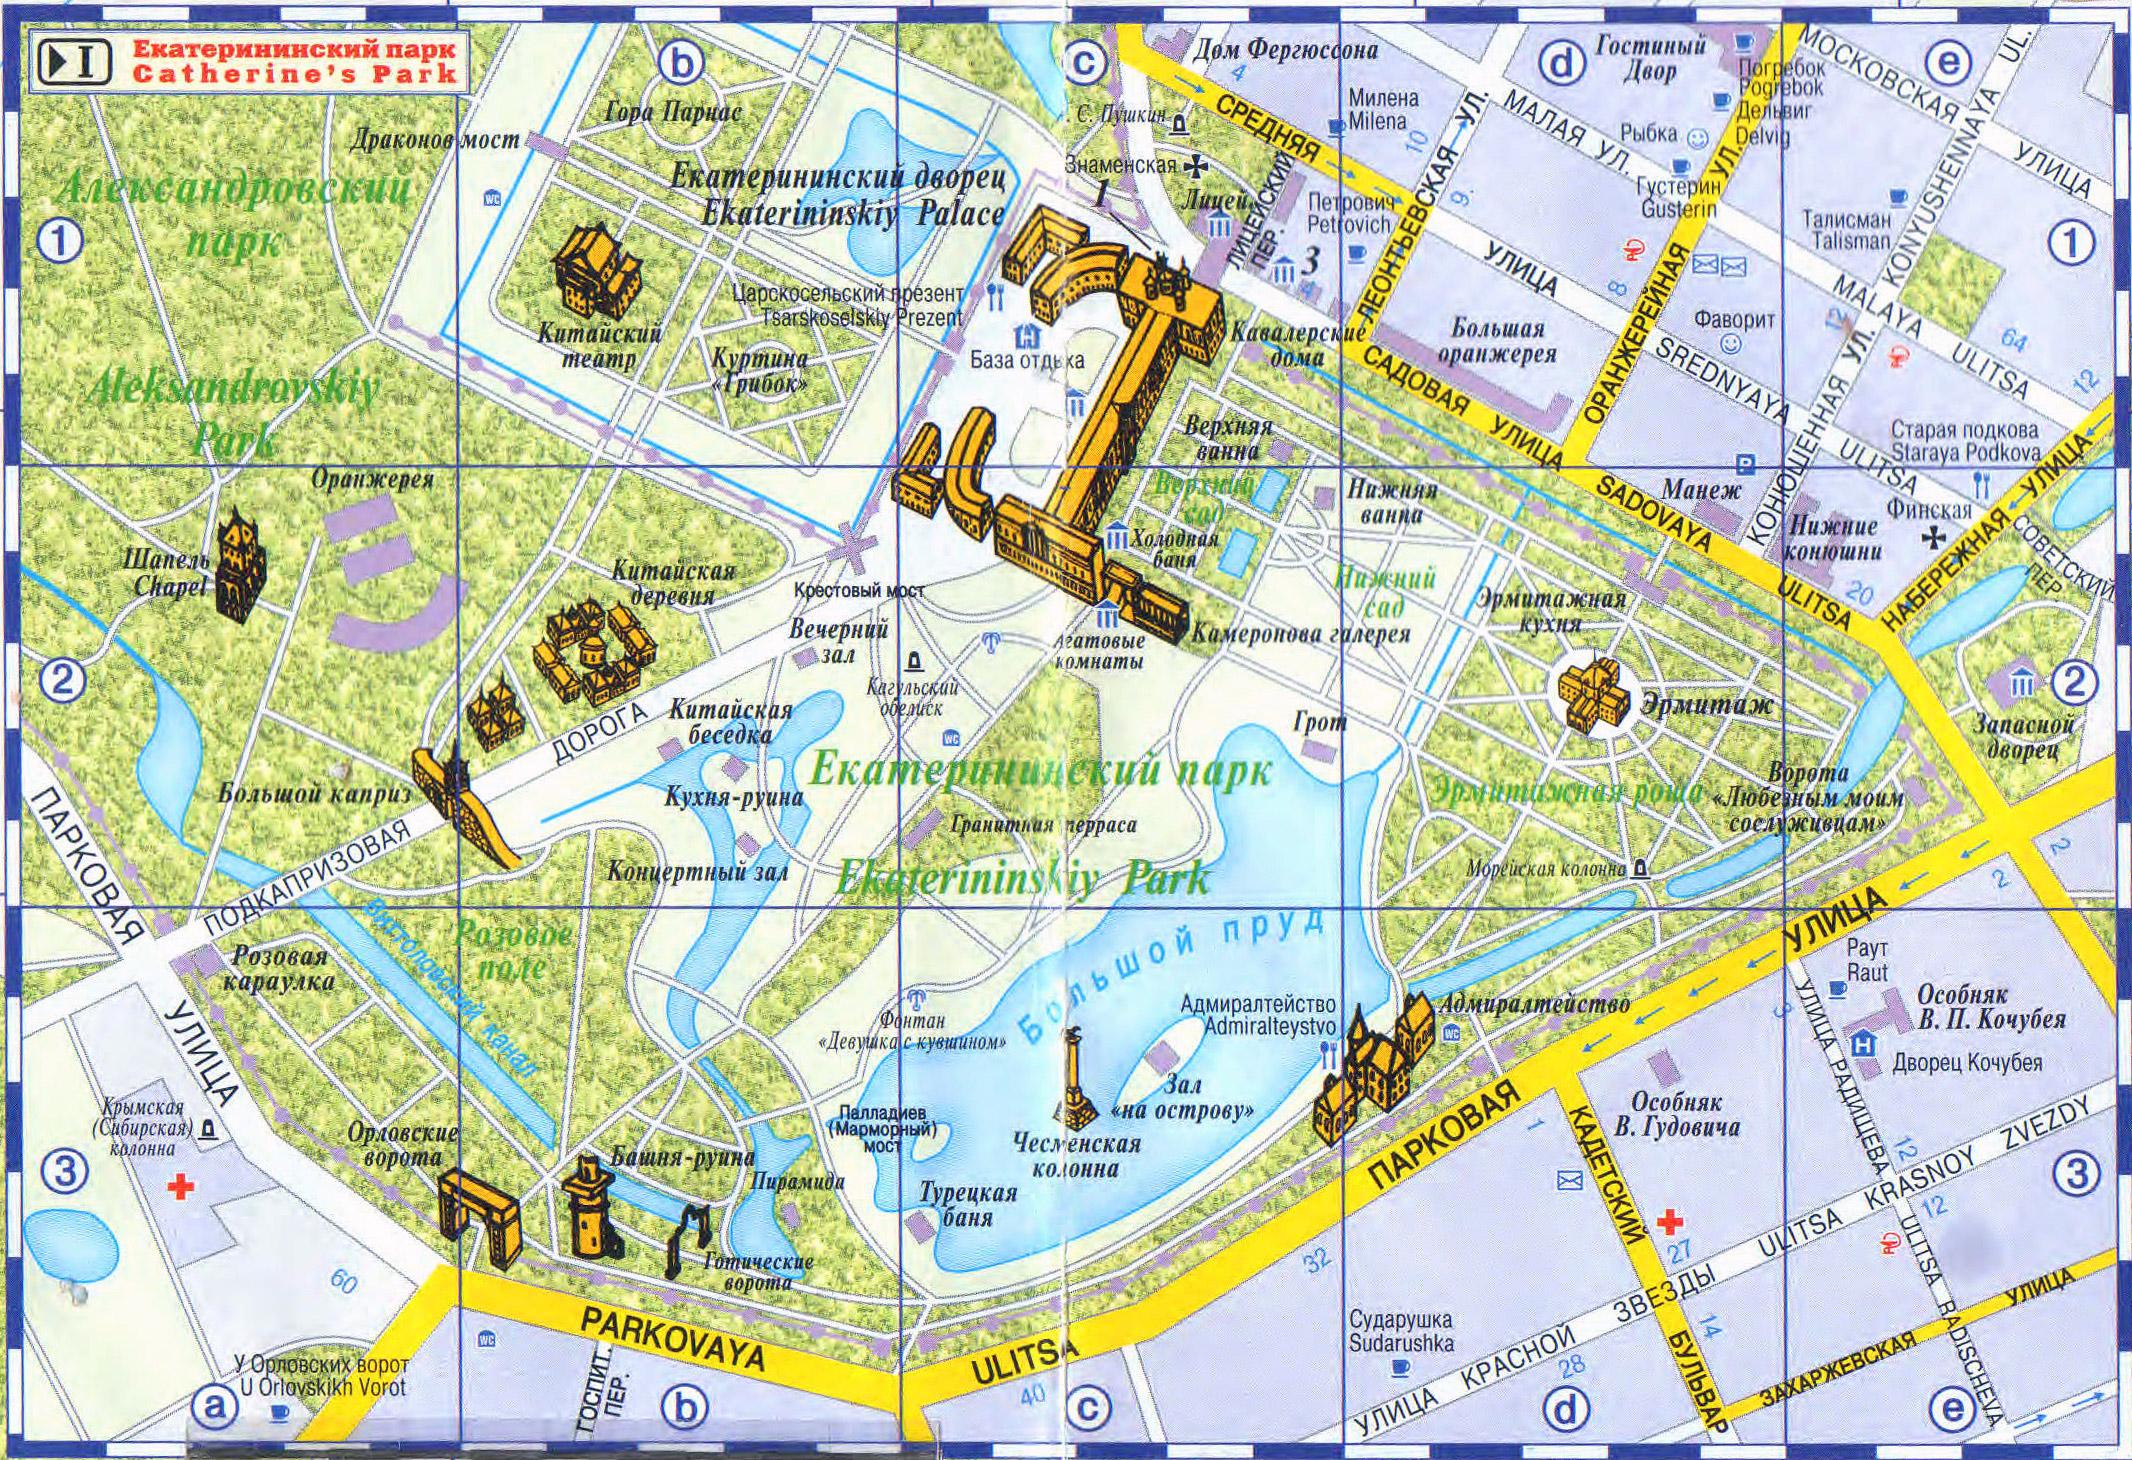 Схема Екатерининского парка г. Пушкин